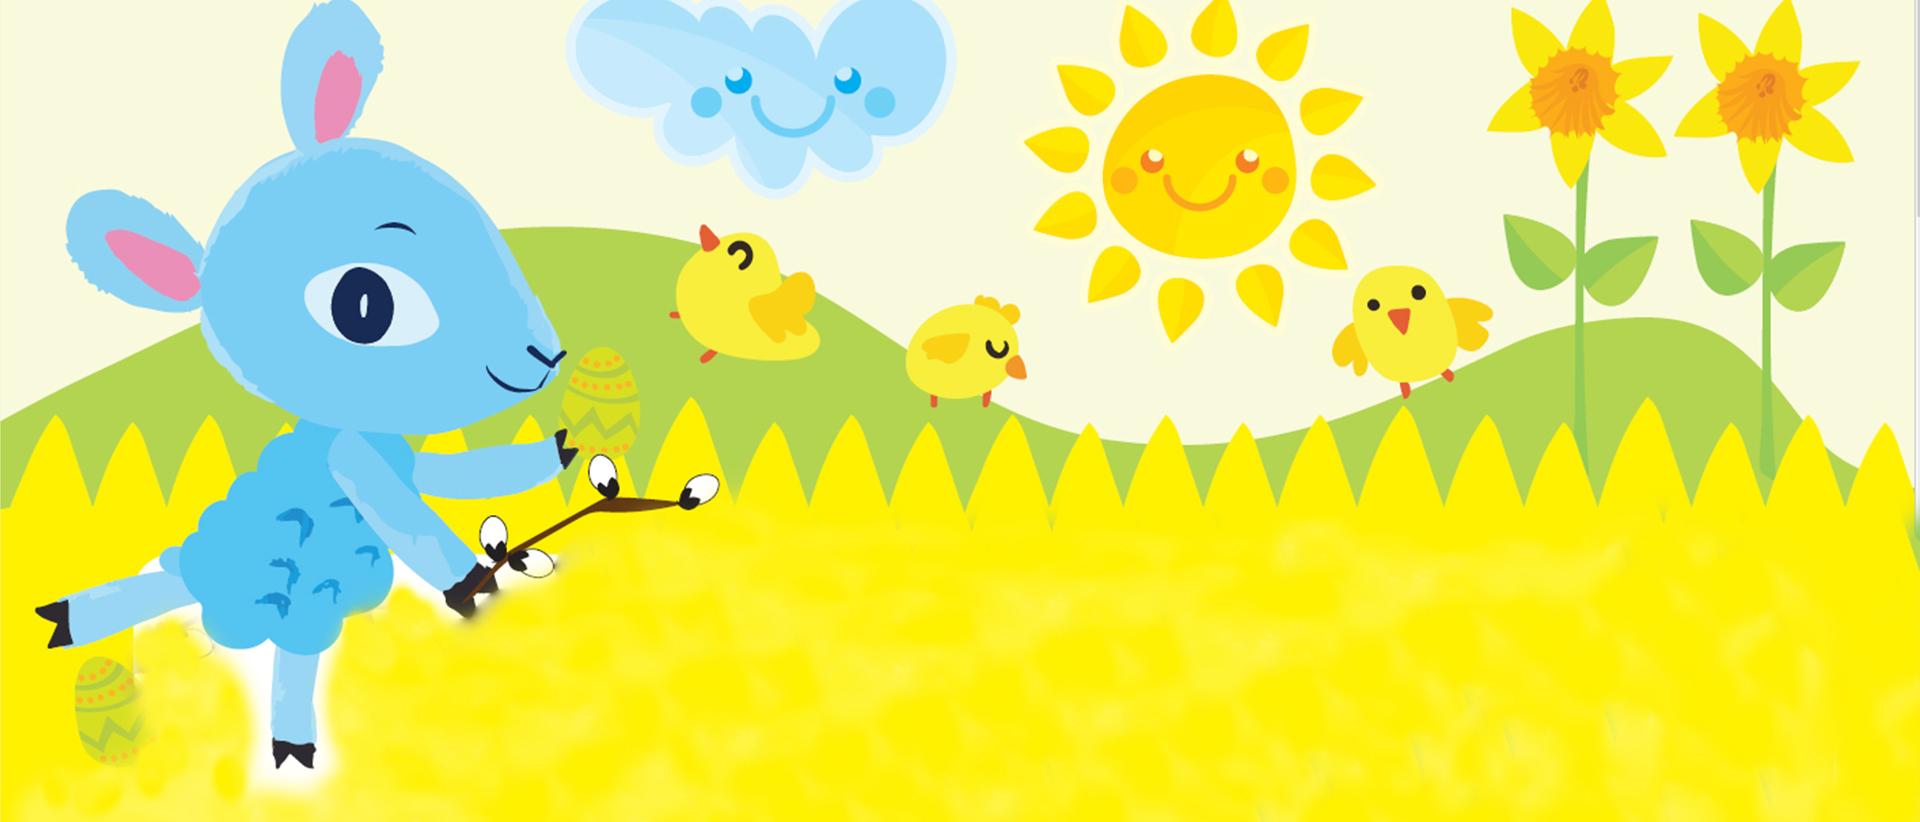 Iloinen piirroskuva jossa vaaleansininen karitsa pajunvitsa kädessä keltaisella niityllä auringonpaisteessa tipujen ja narsissien kanssa